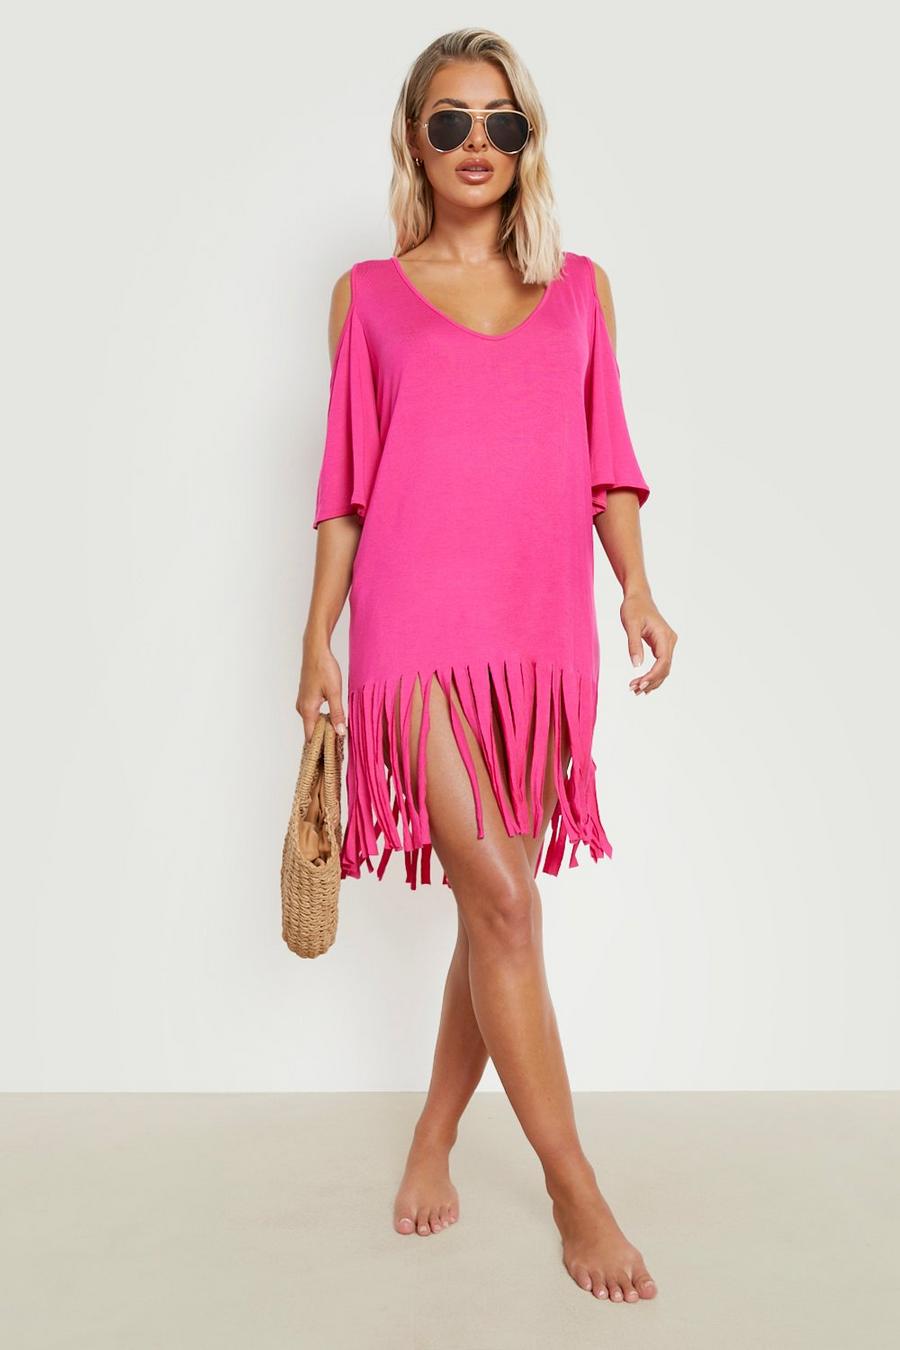 ורוד לוהט rosa שמלת חוף עם פתחים בכתפיים ופרנזים